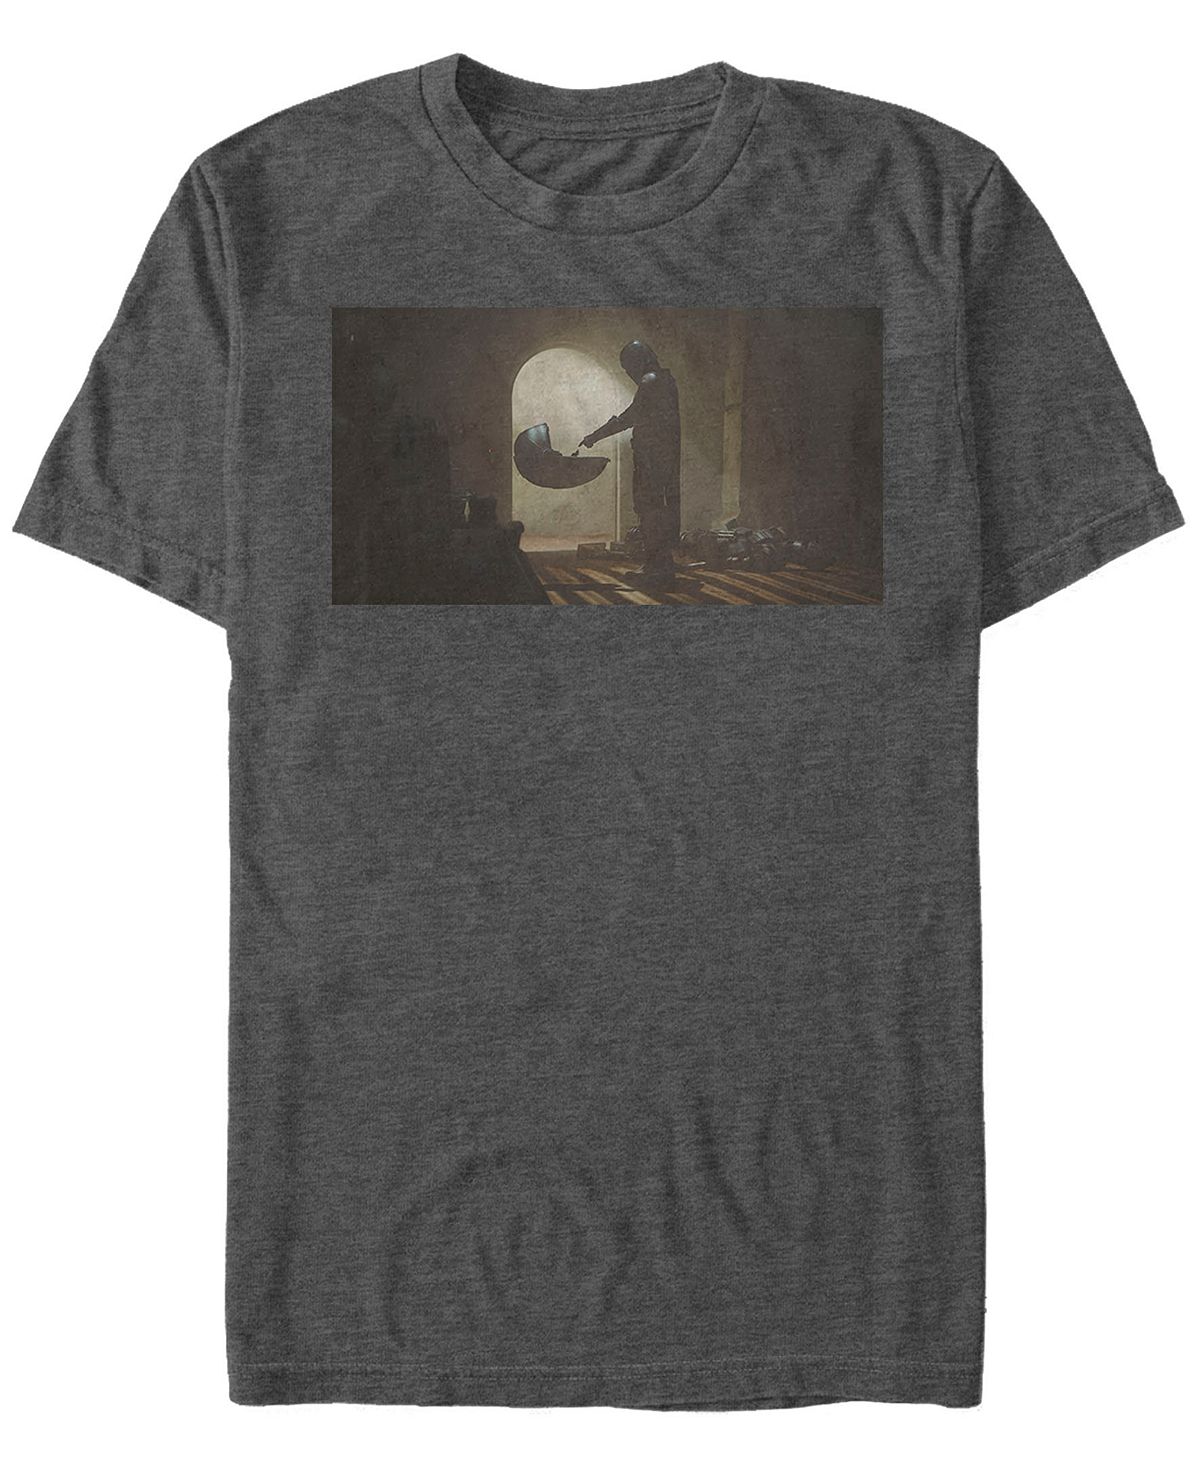 Звездные войны мандалорец первая встреча с коротким рукавом мужская футболка Fifth Sun, темно-серый фото